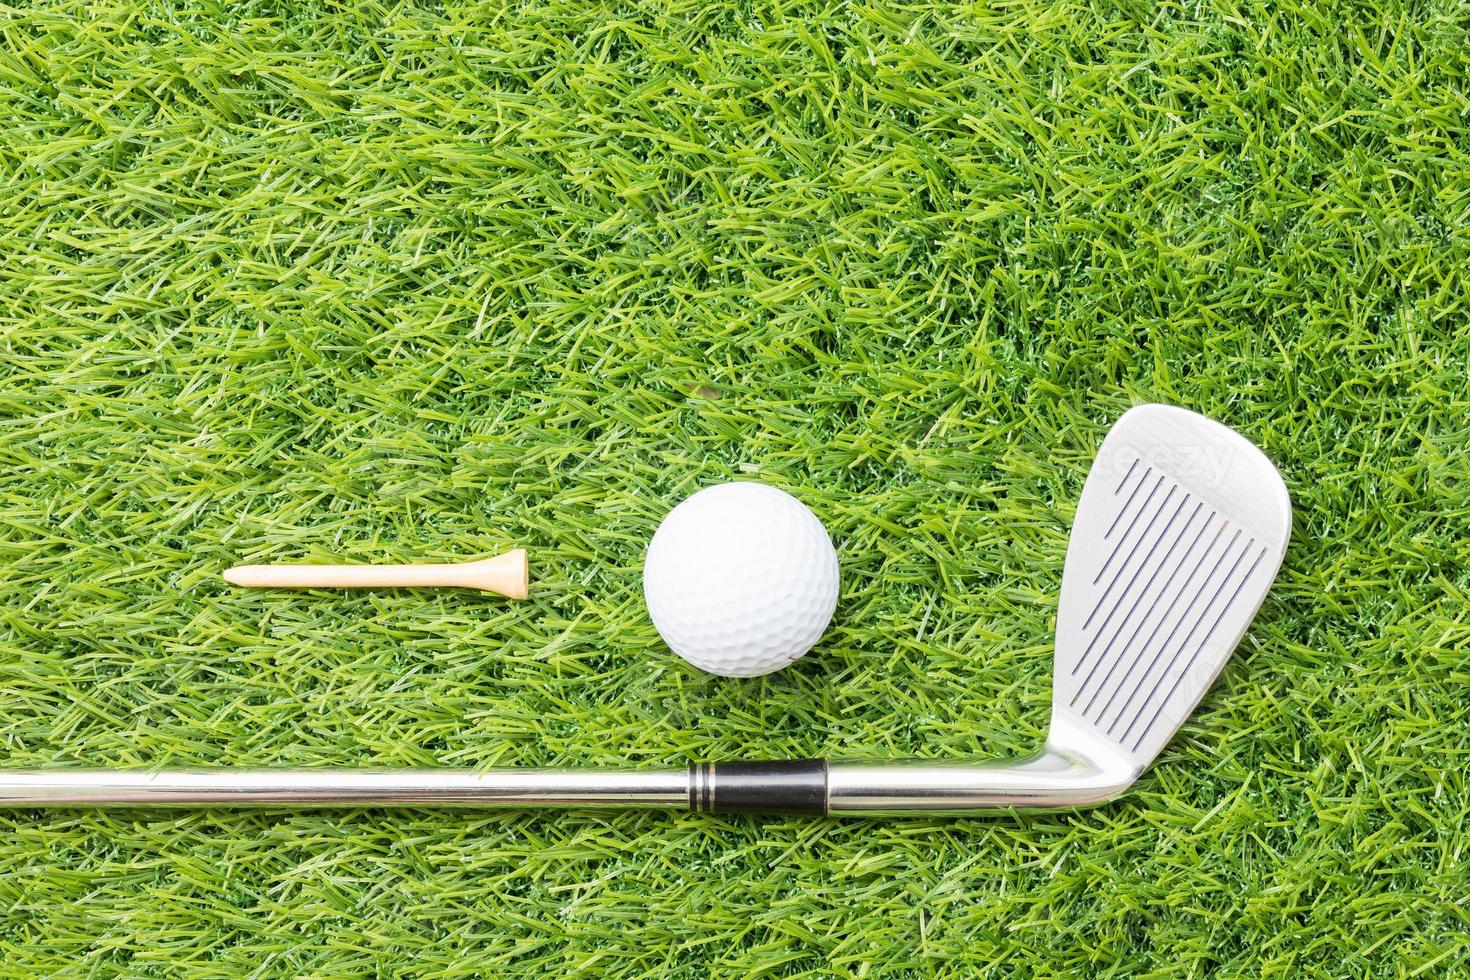 sportobjekt relaterat till golfutrustning foto